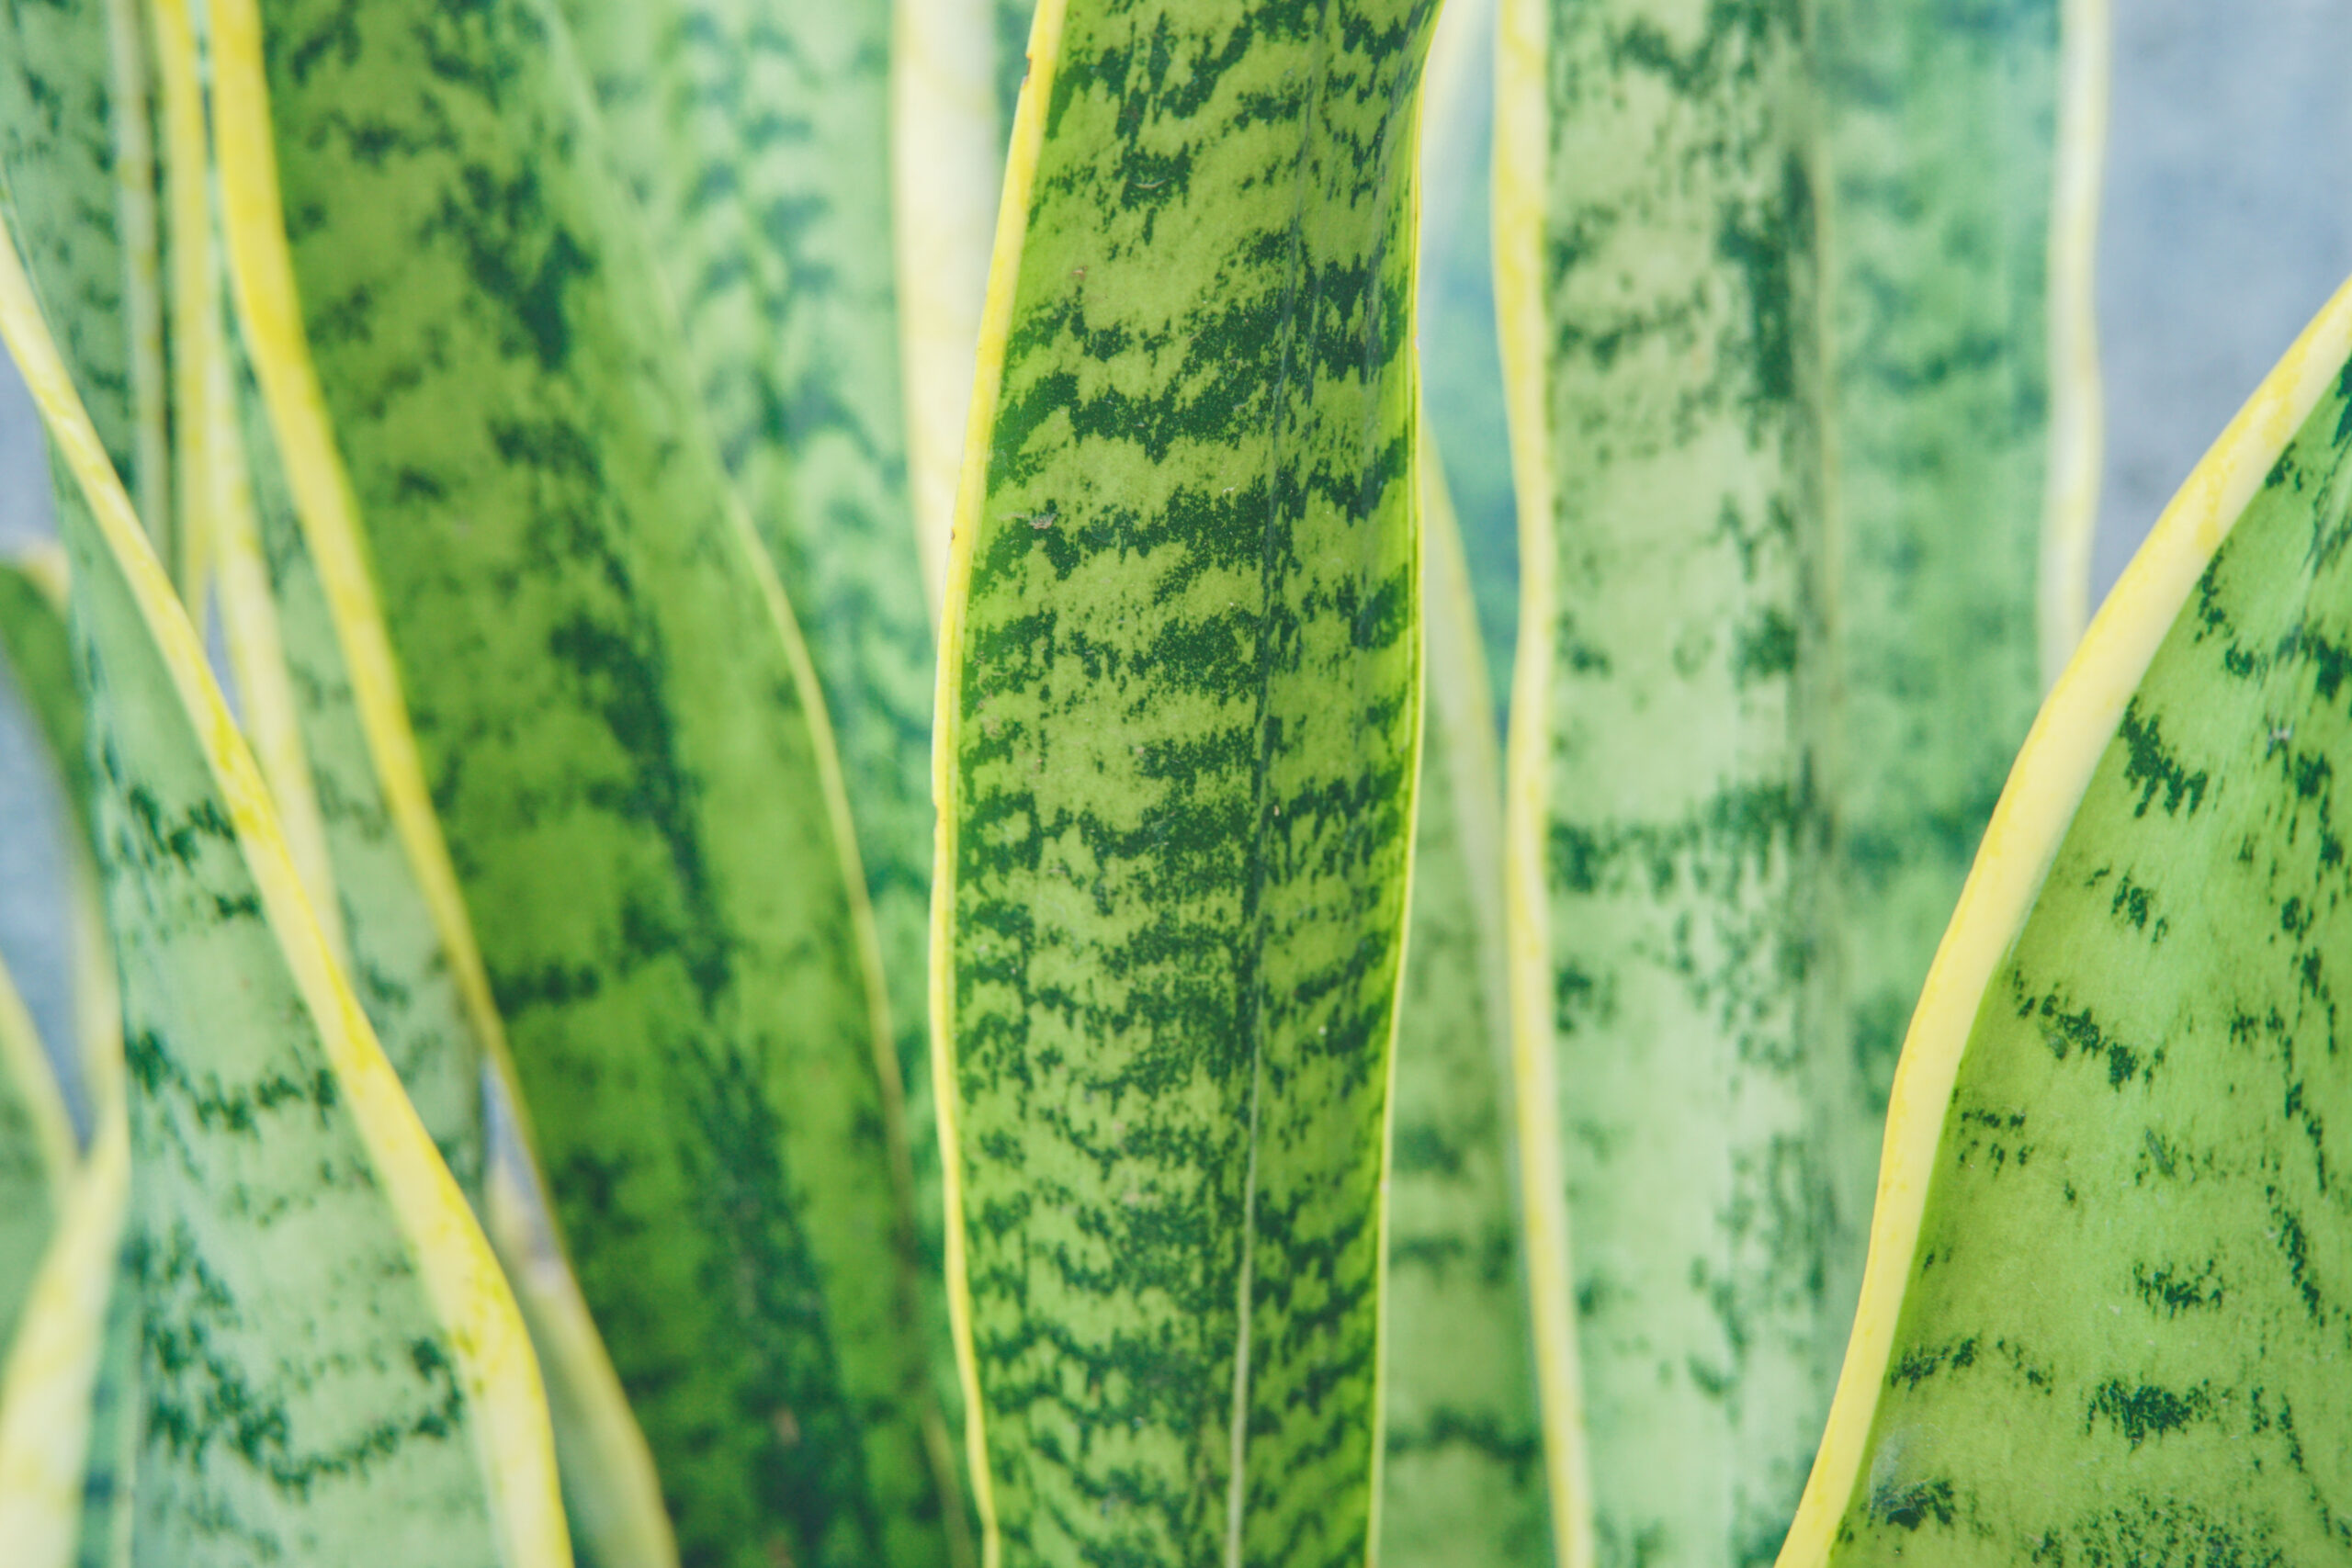 Przedstawione na zdjęciu zielone liście sansewierii wypełniają całe kadry, ukazując piękno tej rośliny. Ich charakterystyczny kształt oraz intensywny kolor doskonale oddają urok i elegancję sansewierii.